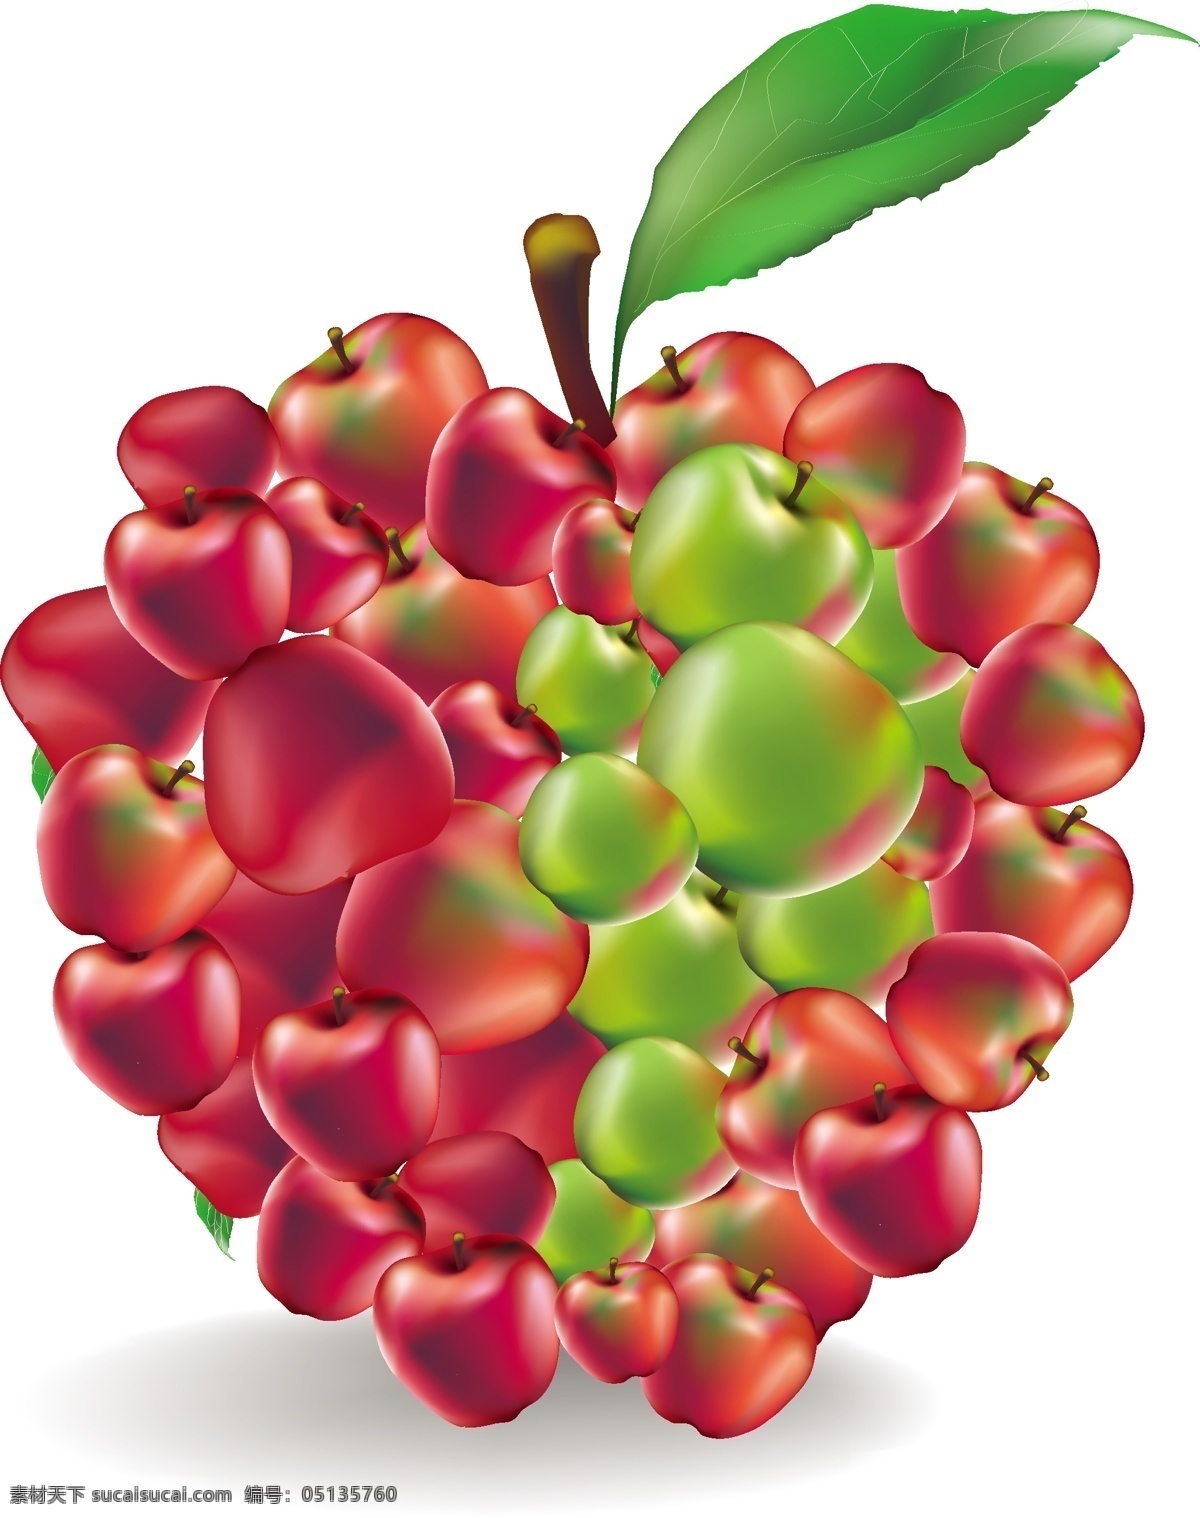 创意苹果 矢量水果 新鲜水果 果实 苹果 蔬菜水果 生物世界 矢量素材 白色